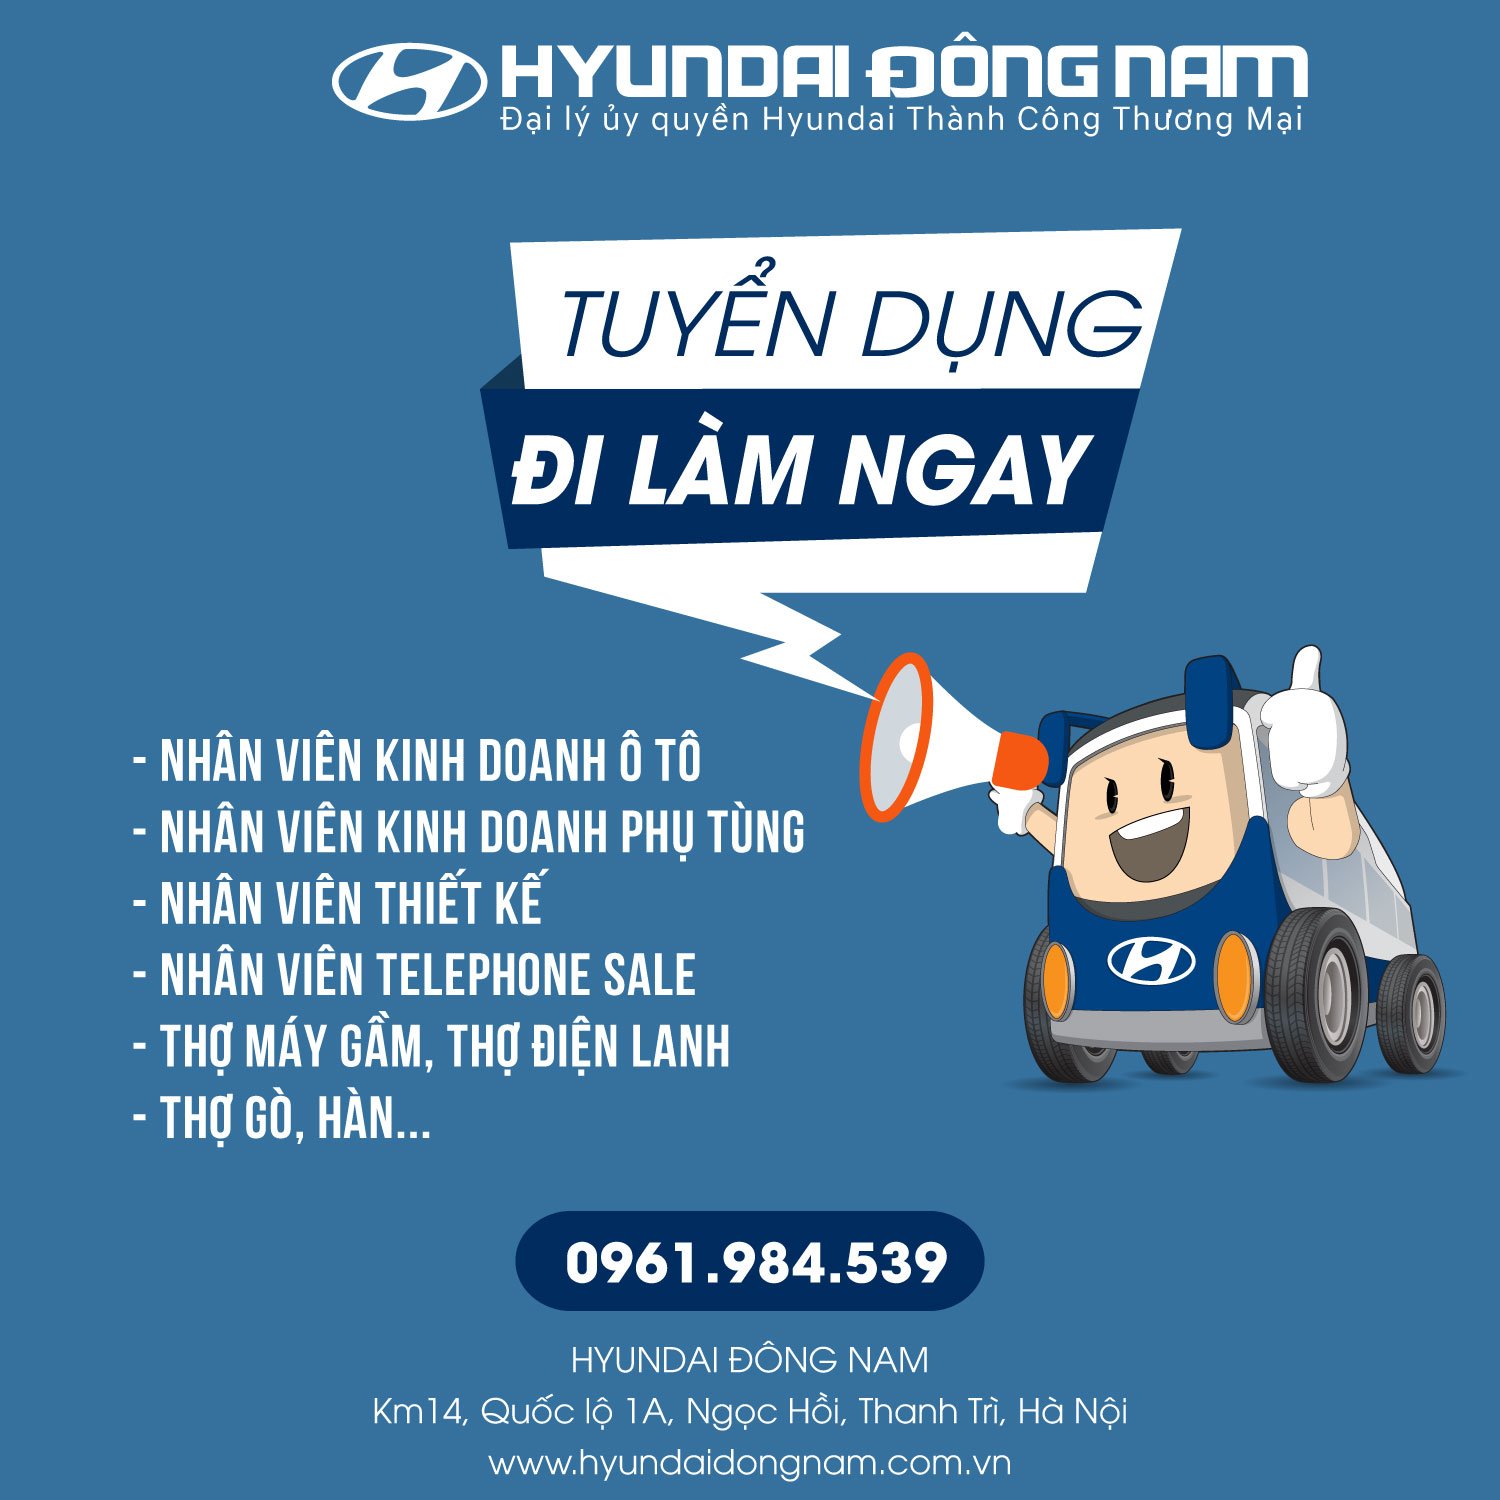 [TUYỂN GẤP] - Hyundai Đông Nam tuyển dụng tháng 03/2021